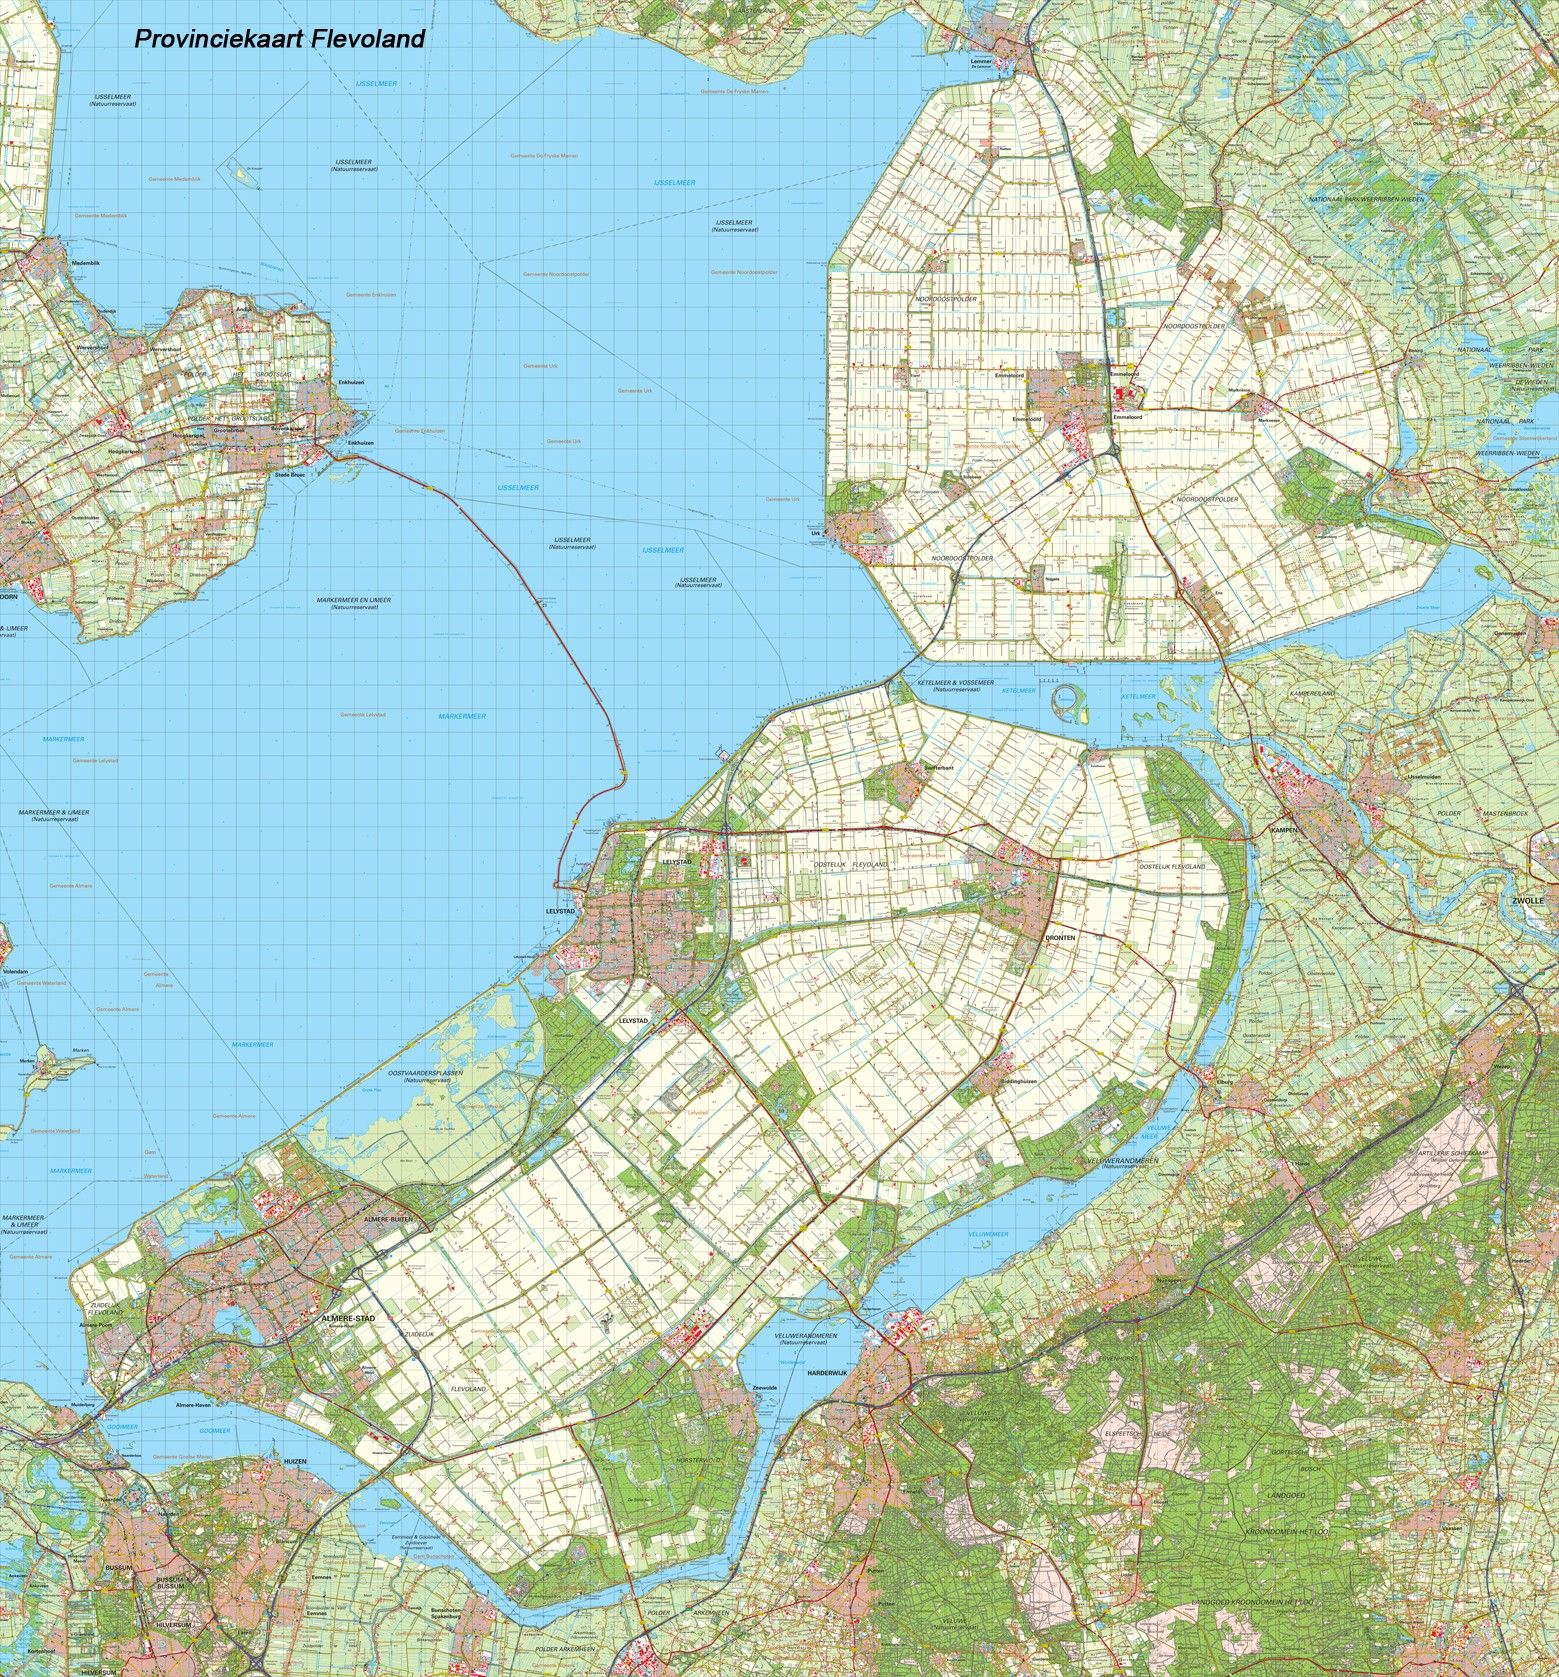 Provincie kaart Flevoland schaal 1:50.000